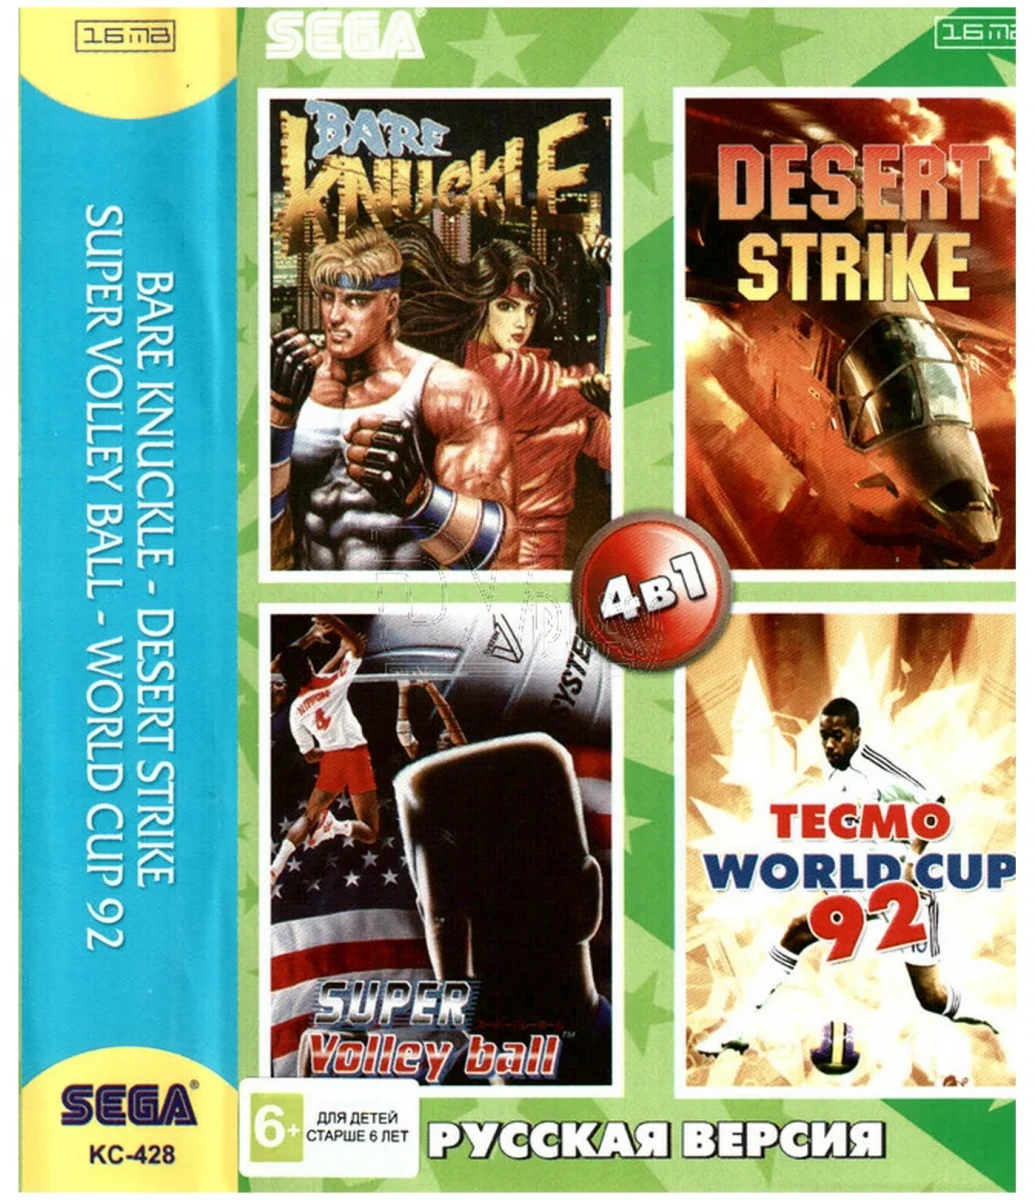 Купить сборник игр. Картридж Desert Strike [Sega]. Картридж сборники игр Sega. Sega картридж десерт страйк. Сборники игр для сега 2000 года.